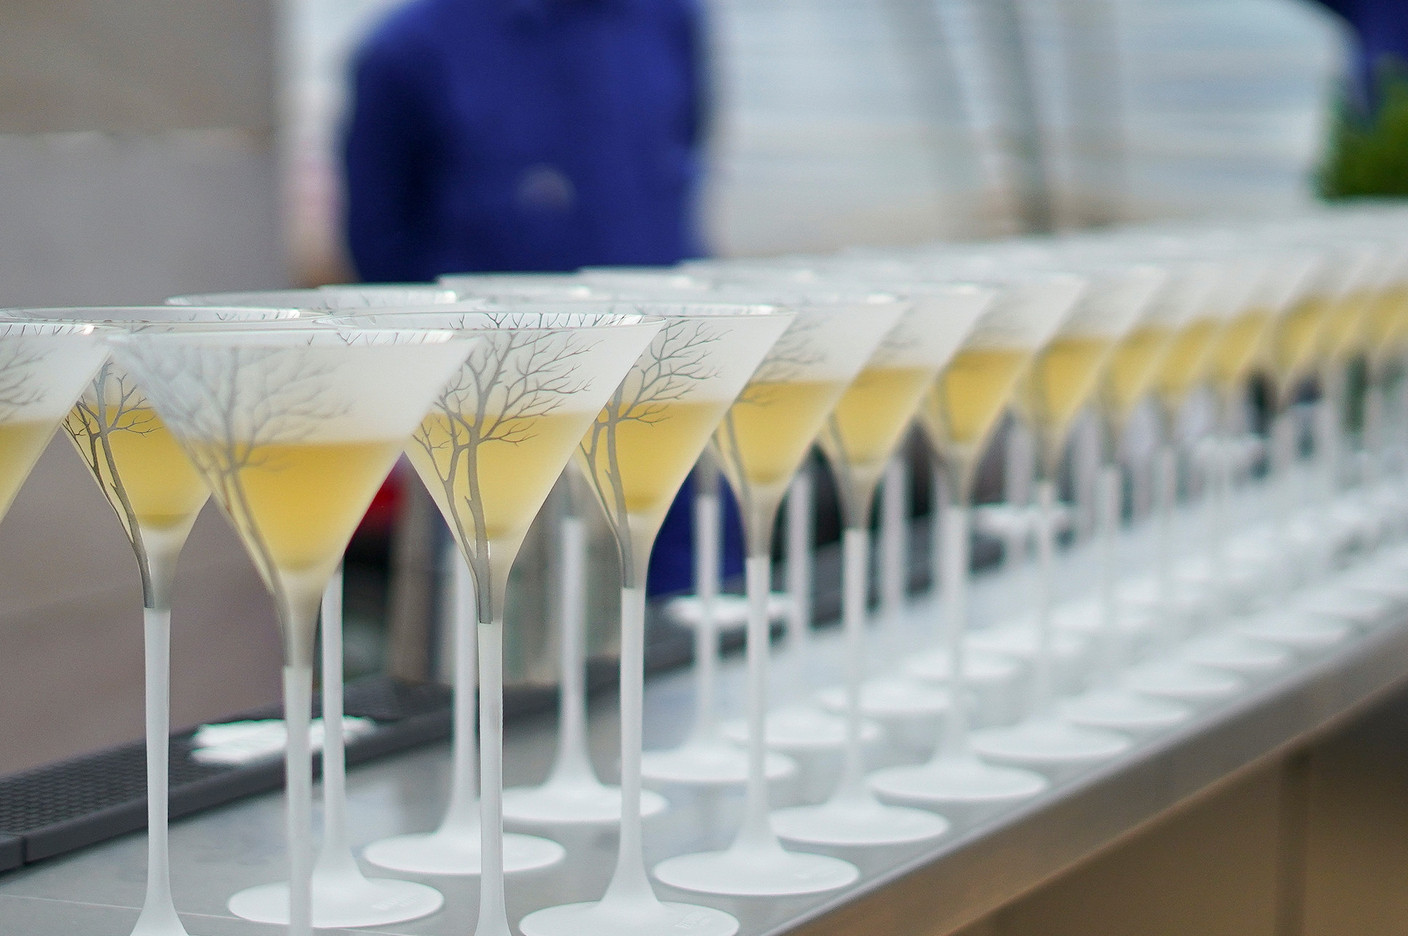 Les vodkas Belvedere ont célébré l’arrivée au Luxembourg de leur gamme bio «Organic Infused» autour d’un brunch champêtre très réussi organisé par Symposium.  (Photo: Symposium)